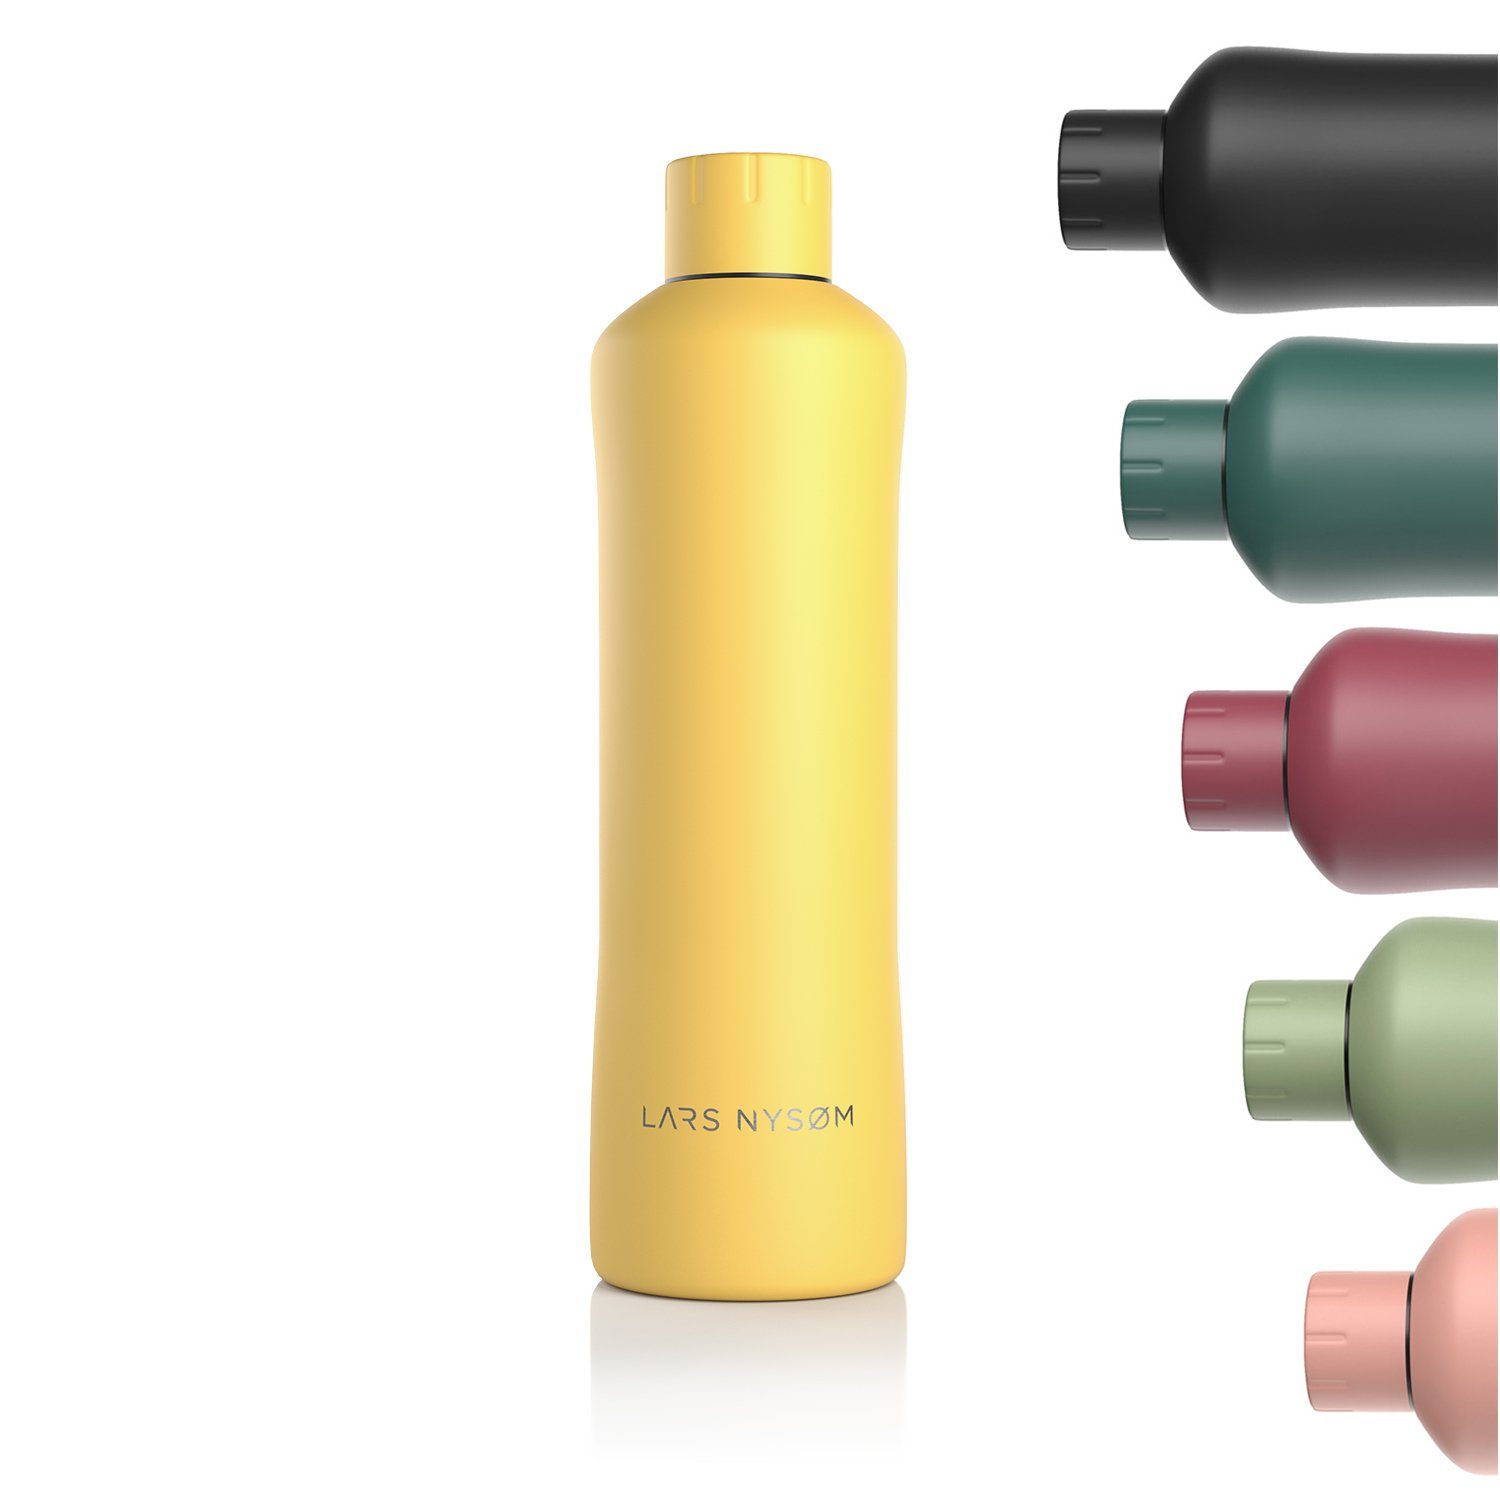 Bølge, BPA-Freie Thermosflasche NYSØM Mustard Isolierflasche LARS Spicy geeignet Kohlensäure